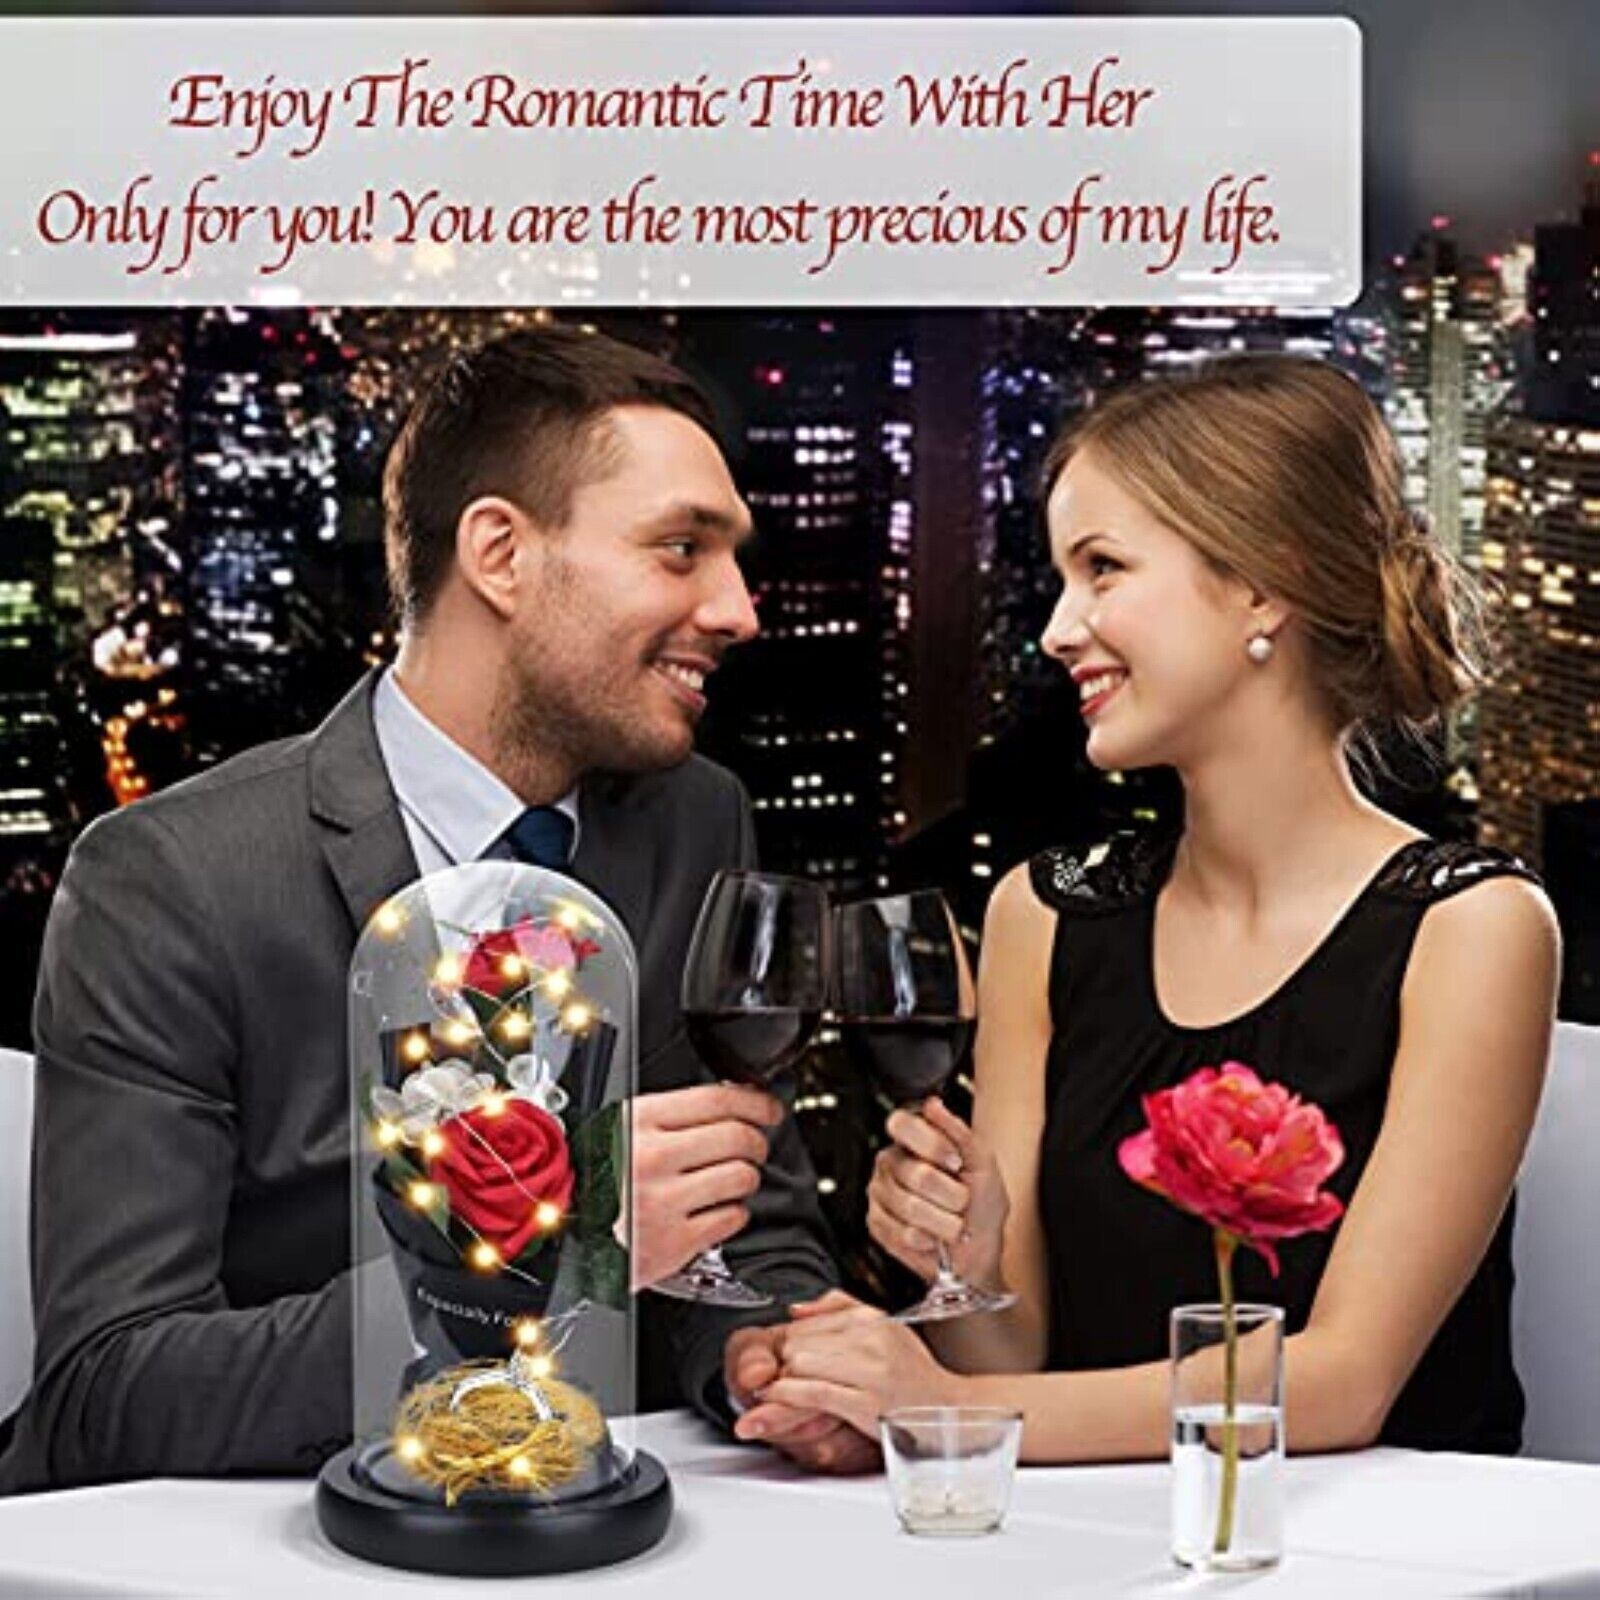 LED Die Schöne und das Biest Ewige Rose im Glas Geburtstagsgeschenk Valentinstag